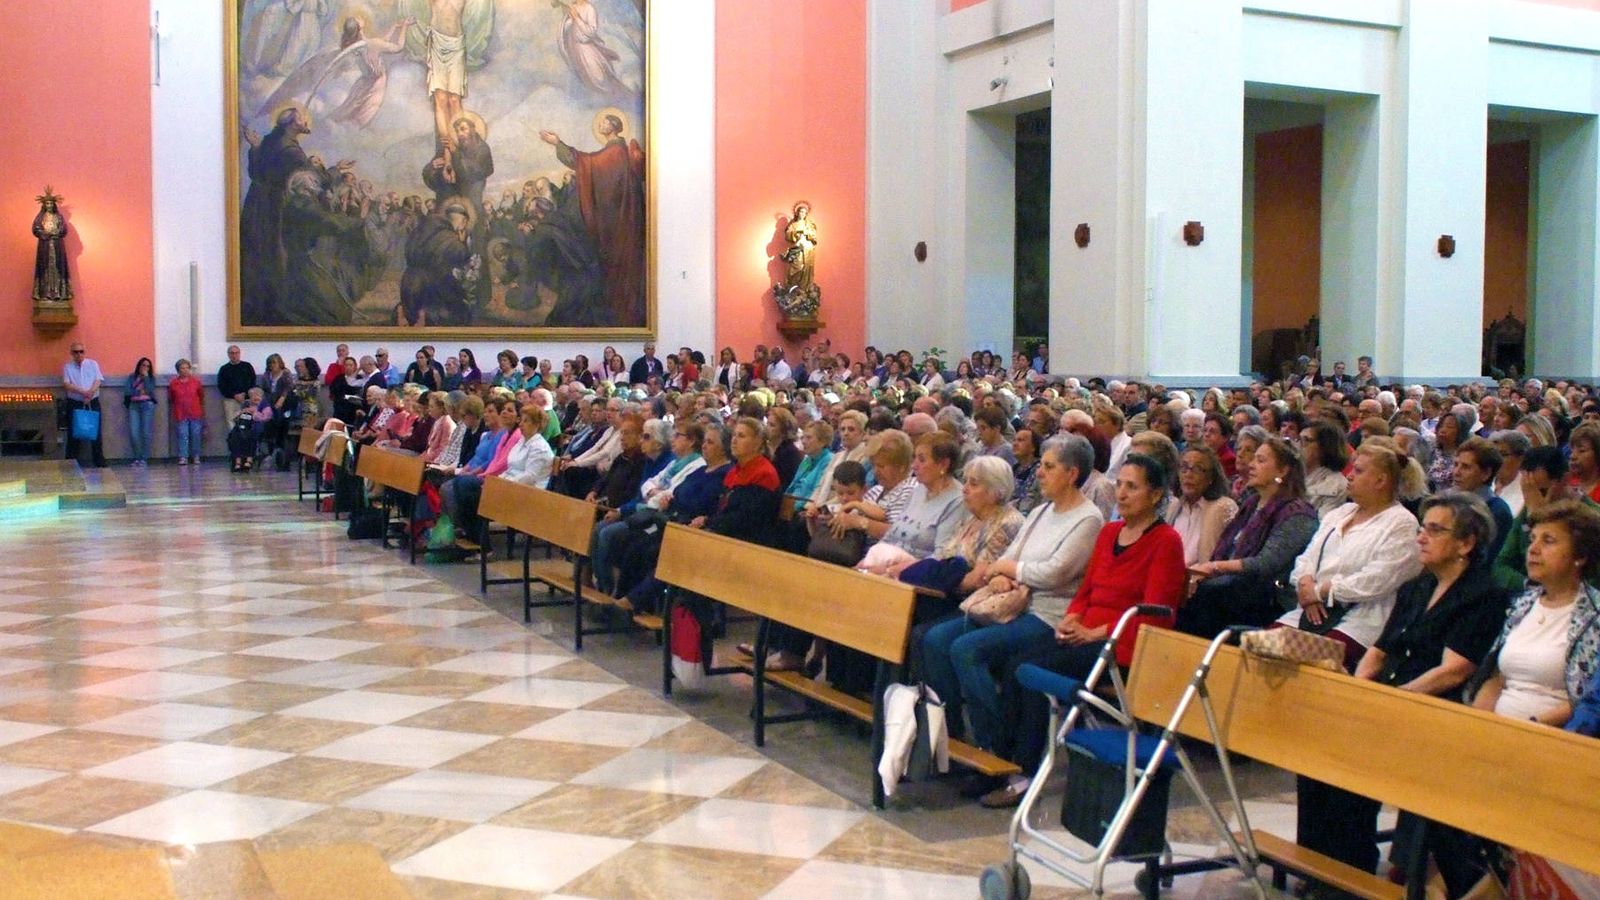 Foto: Iglesia San Antonio de Cuatro Caminos en Madrid a rebosar durante una misa